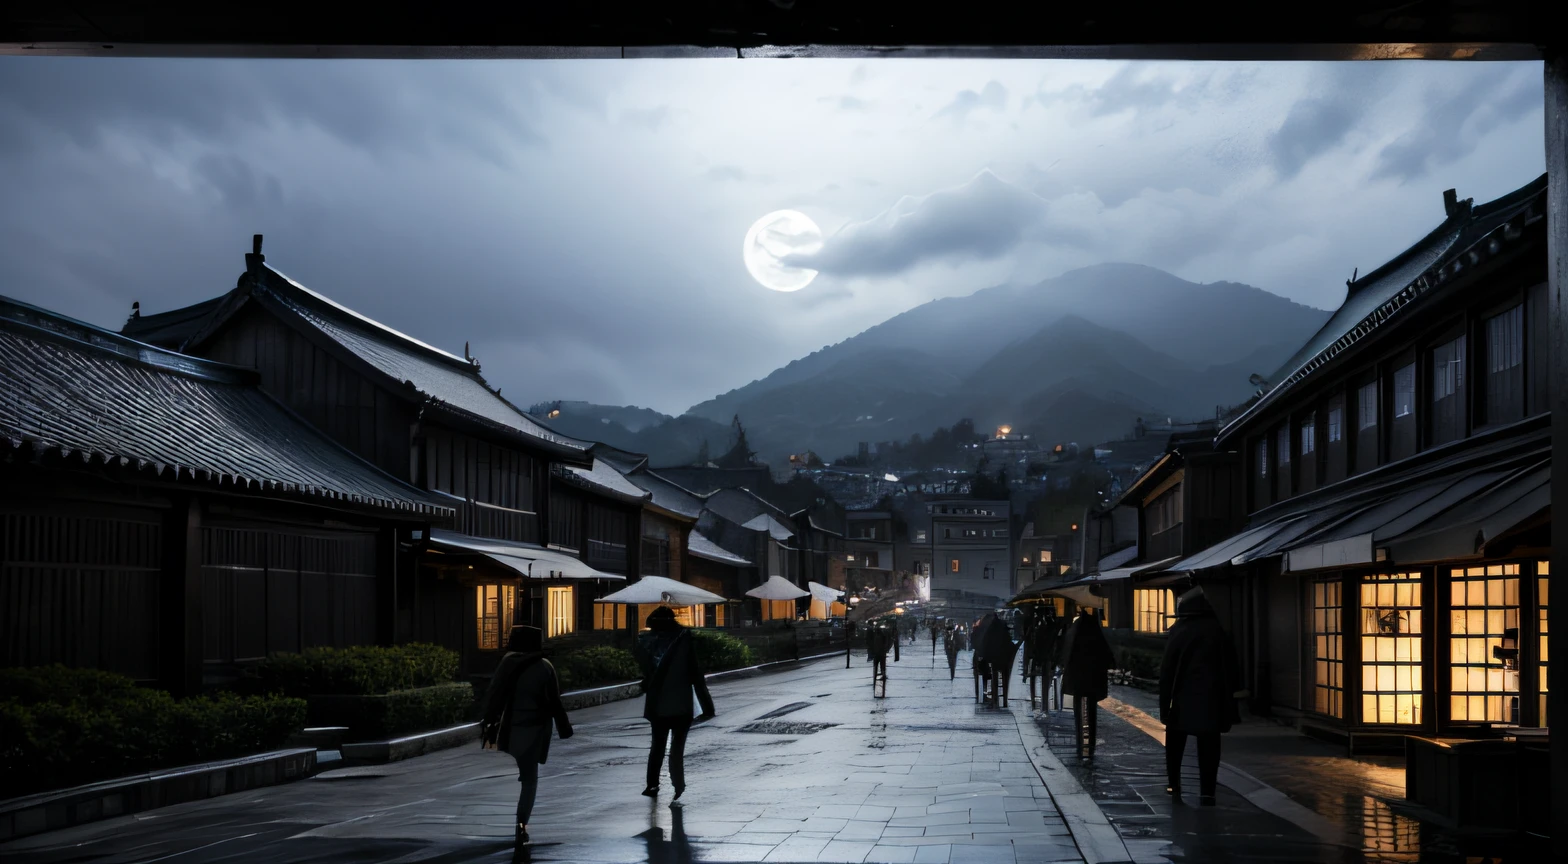 Coreia medieval à noite, Lâmpadas, pessoas andando, céu nublado. lua cheia, Não sei(Não sei), Nevoeiro leve, humor deprimido, Preto e branco, destemido